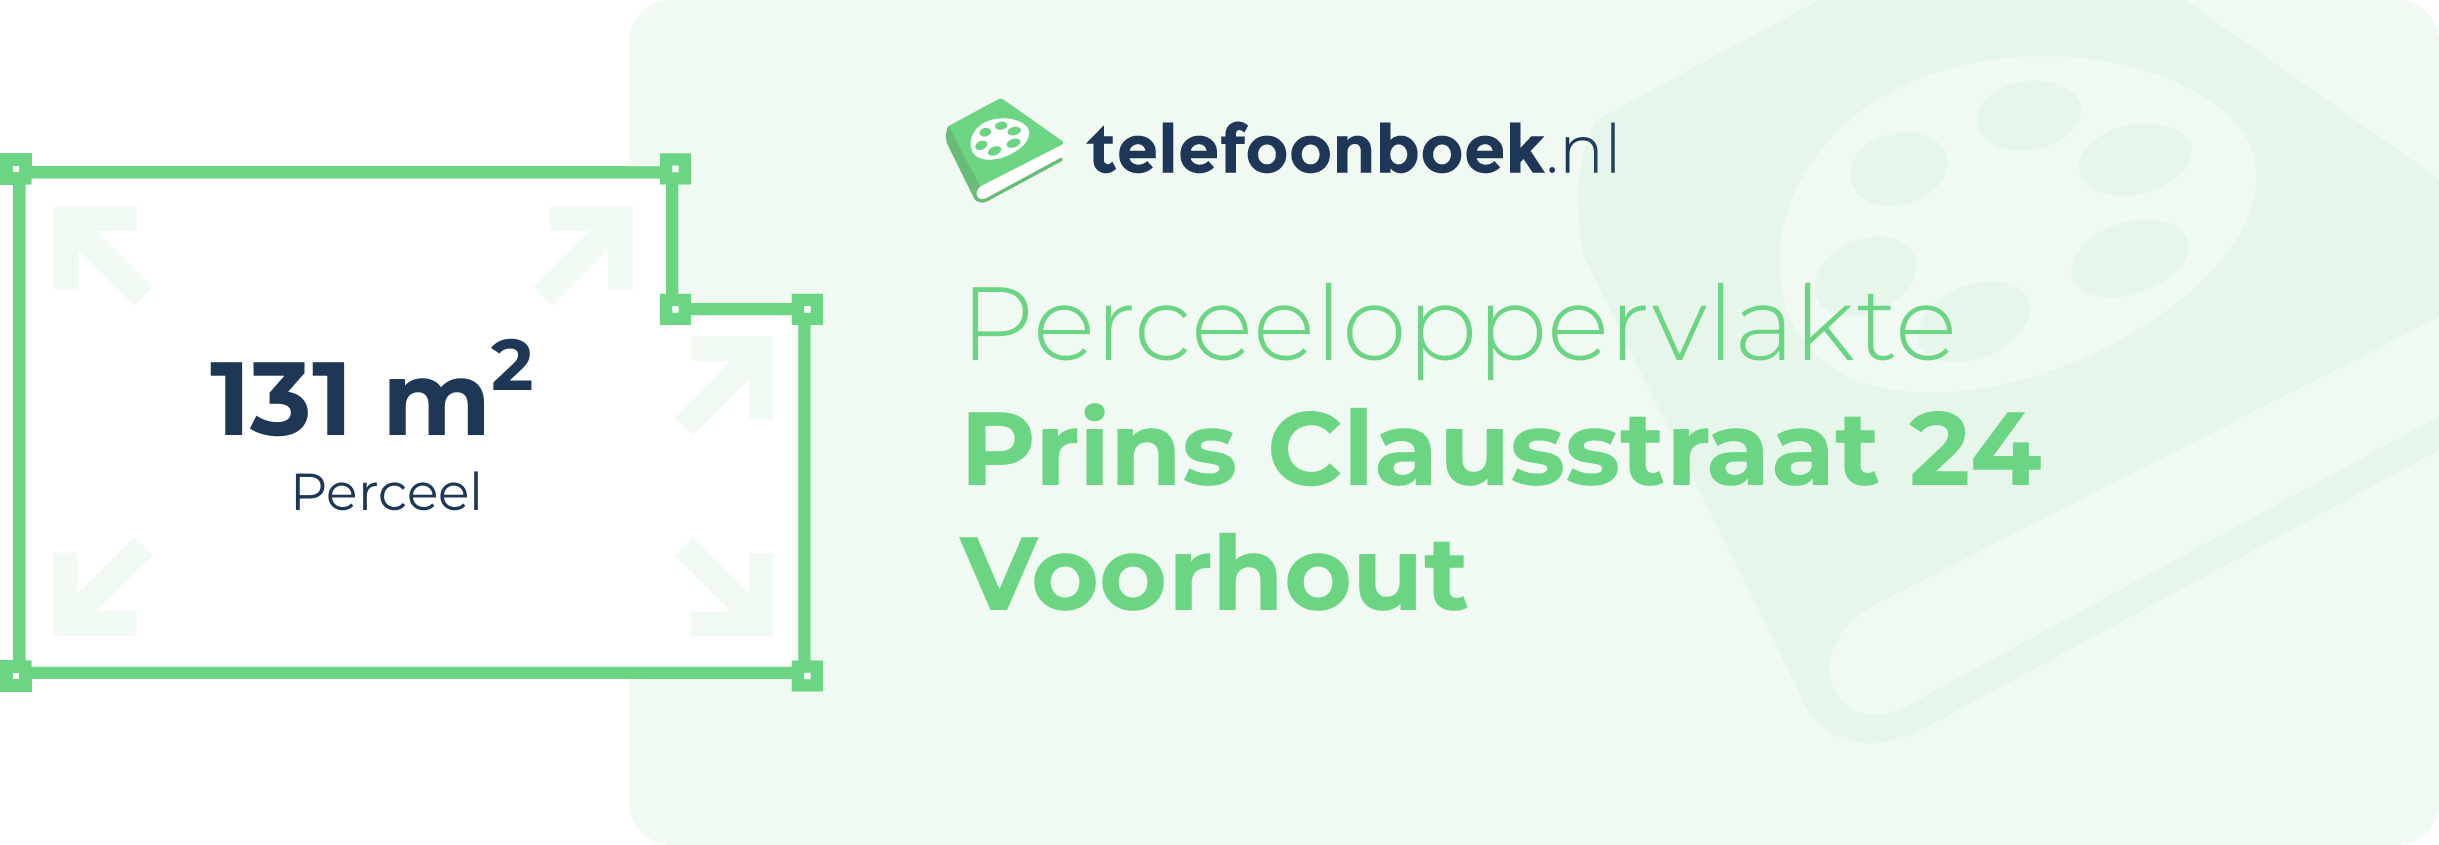 Perceeloppervlakte Prins Clausstraat 24 Voorhout